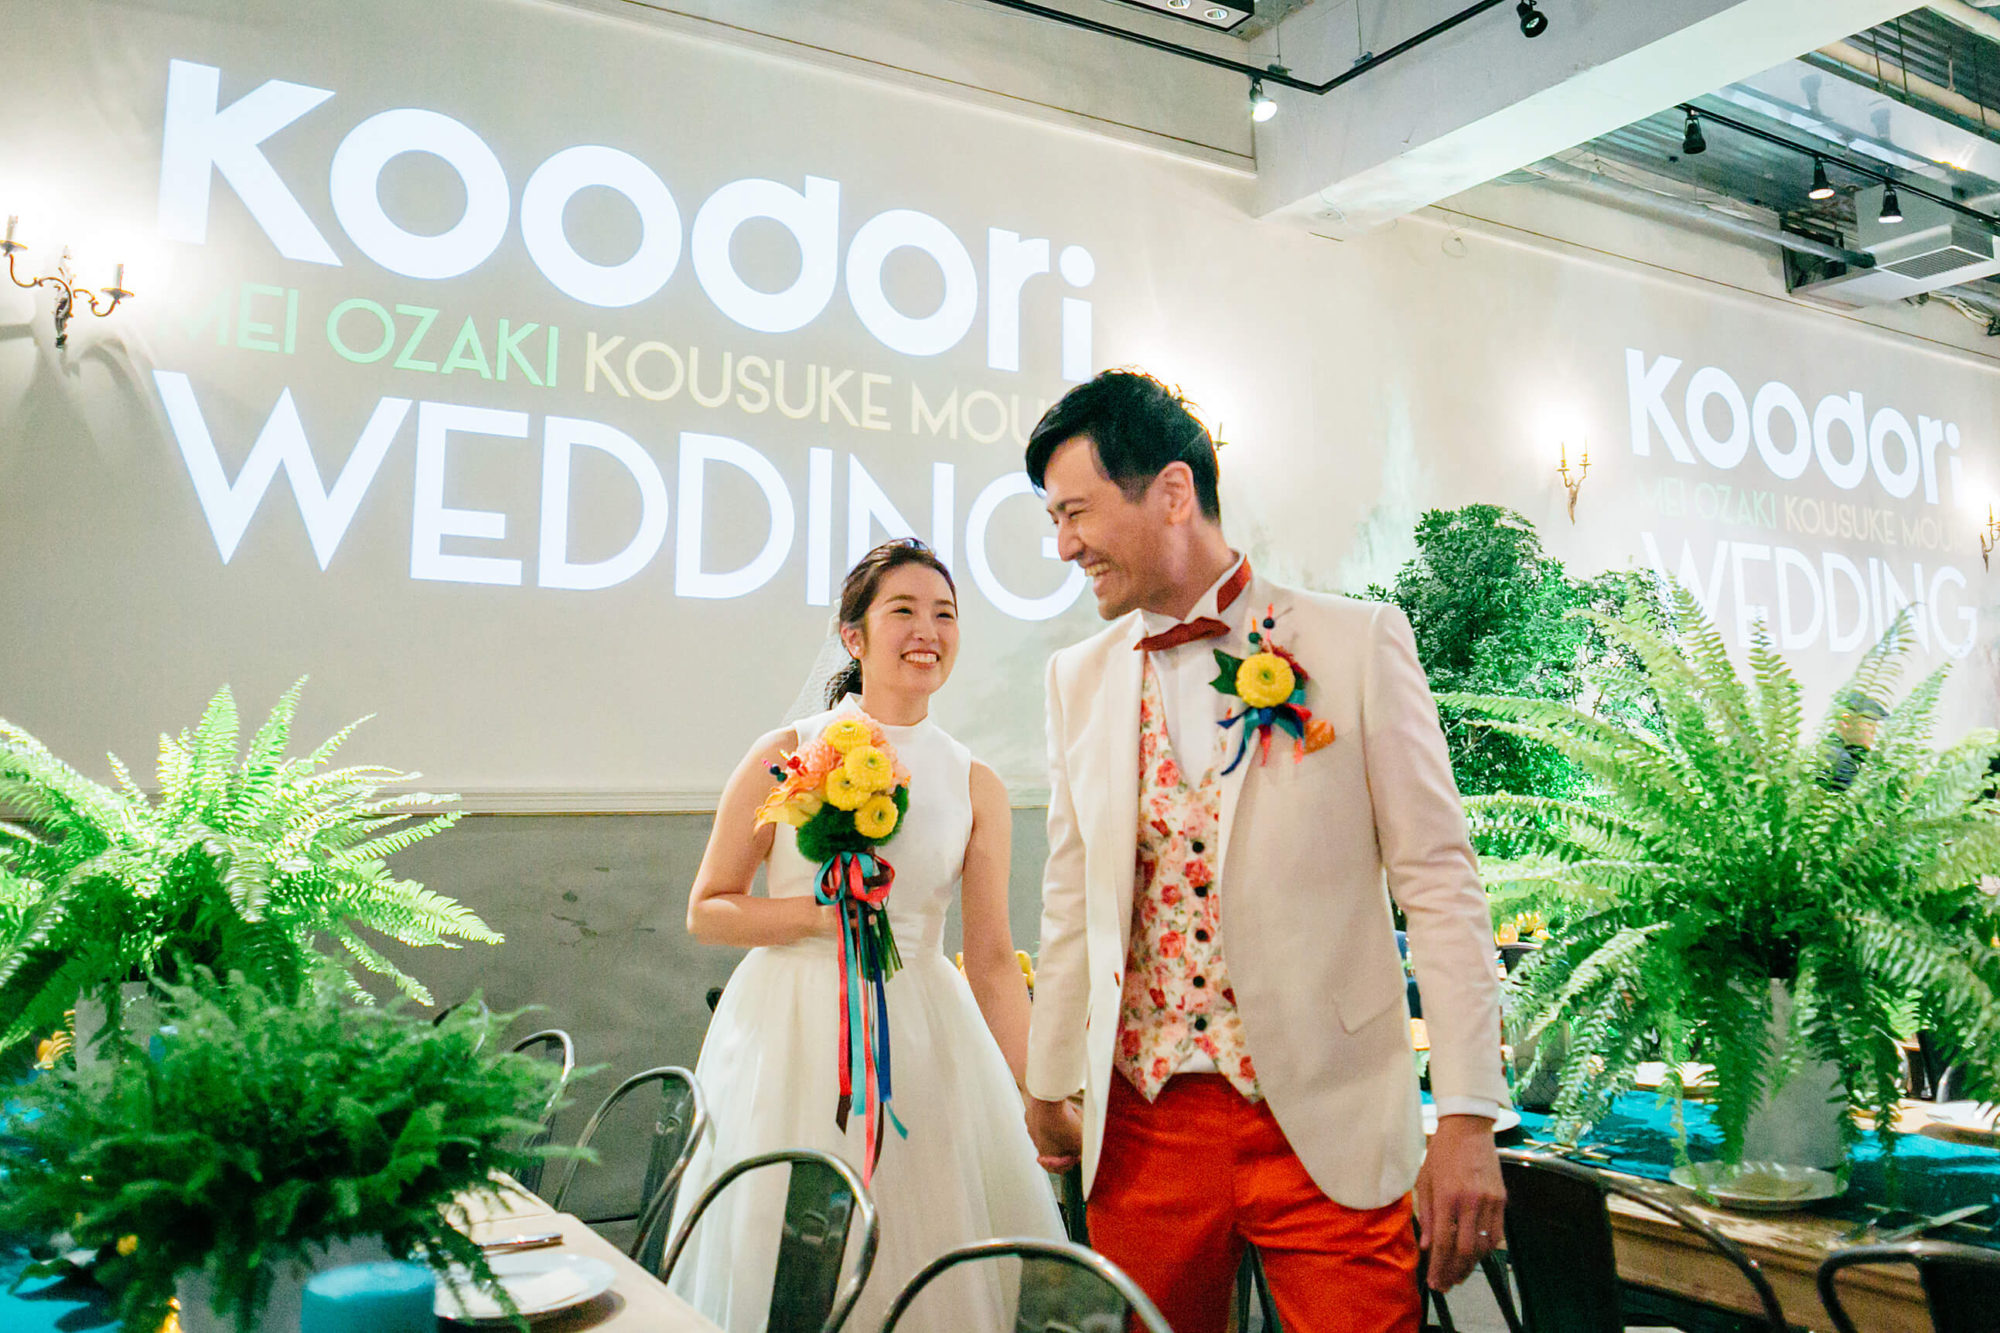 Koodori Wedding